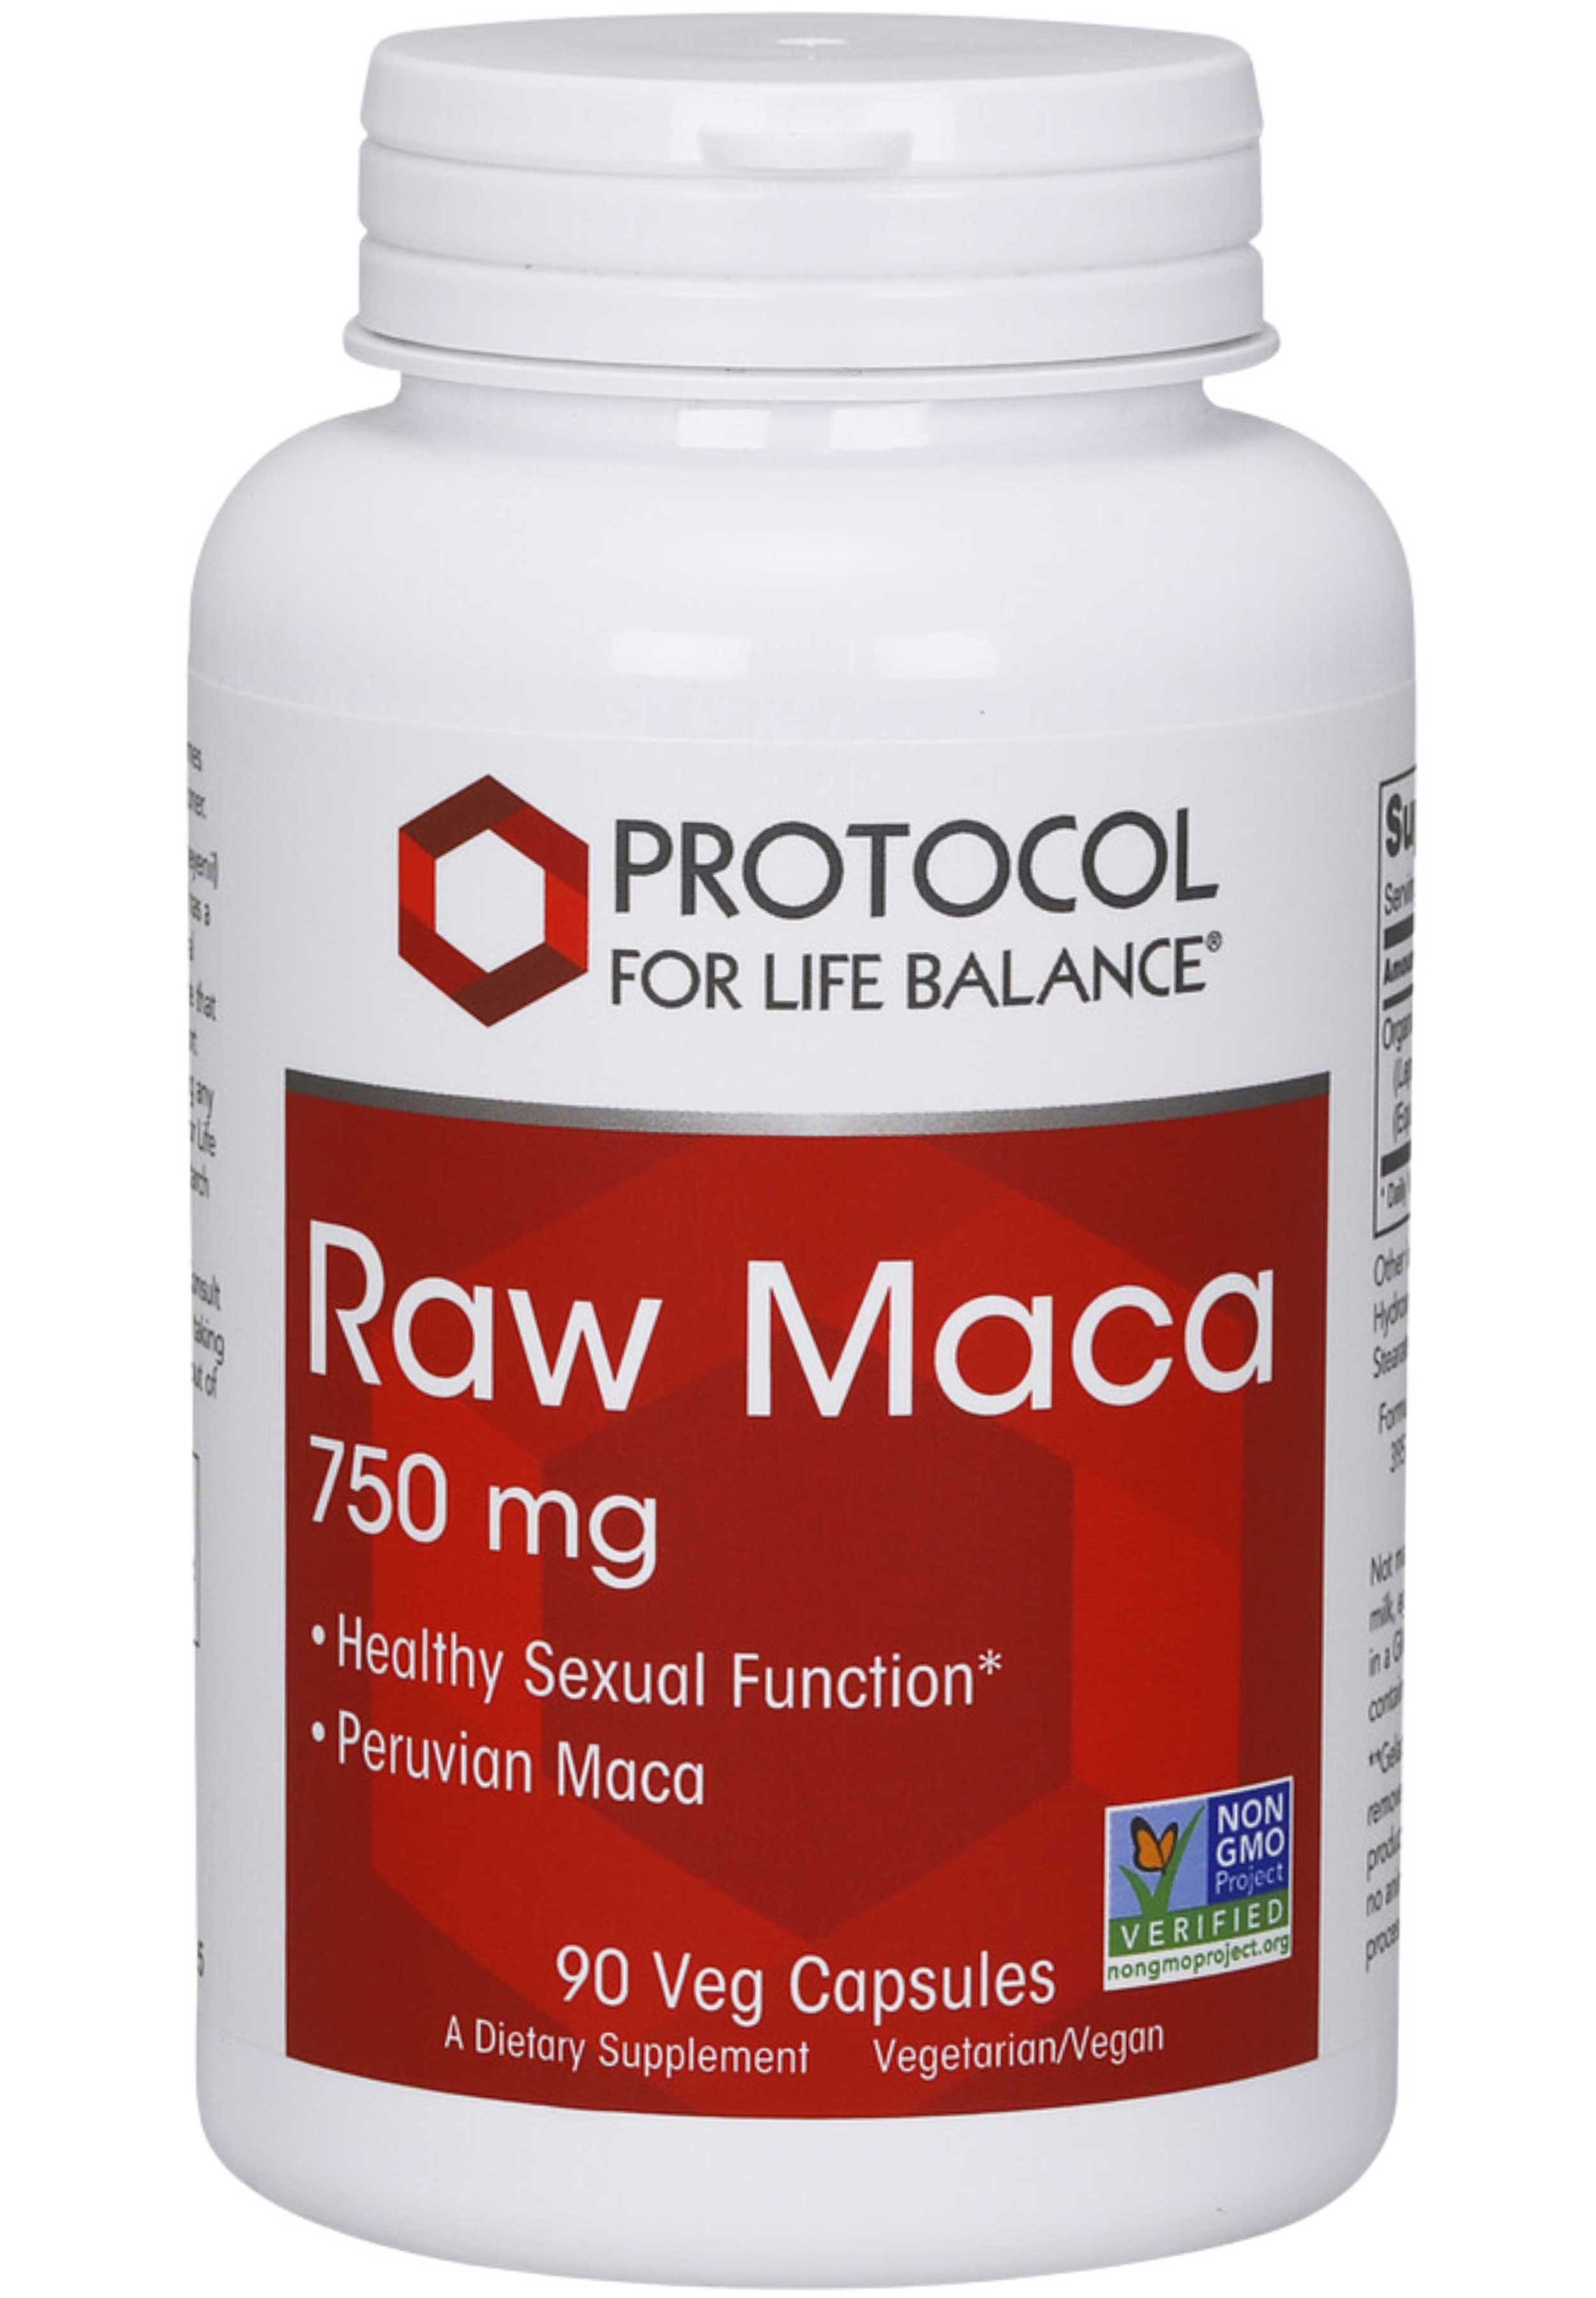 Protocol for Life Balance Raw Maca 750 mg